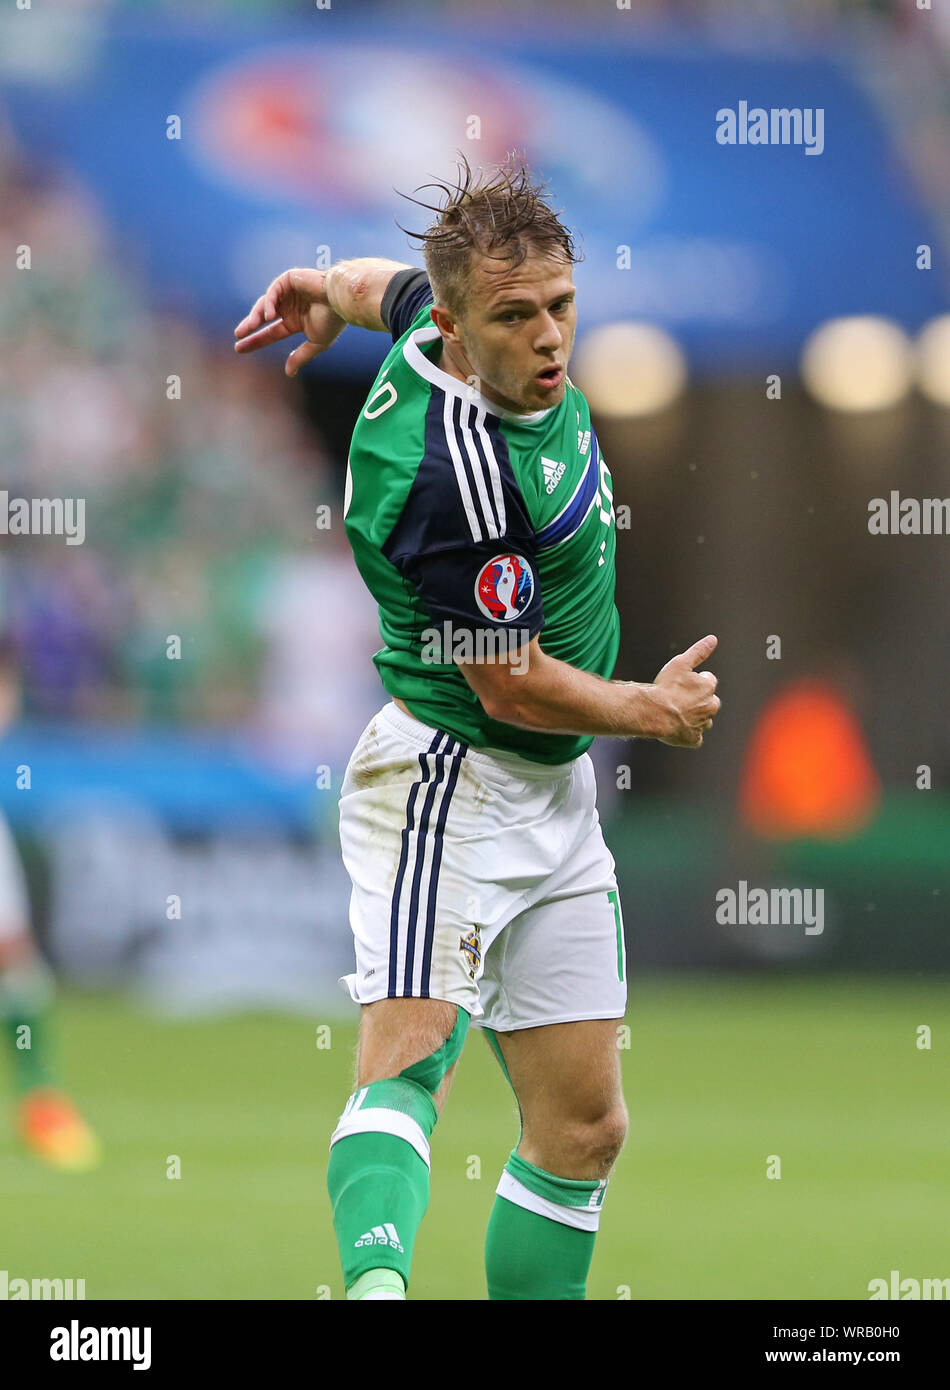 Lione, Francia - 16 giugno 2016: Jamie Ward dell'Irlanda del Nord in azione durante UEFA EURO 2016 partita contro l'Ucraina a Stade de Lyon stadium di Lione. Irlanda del Nord ha vinto 2-0 Foto Stock